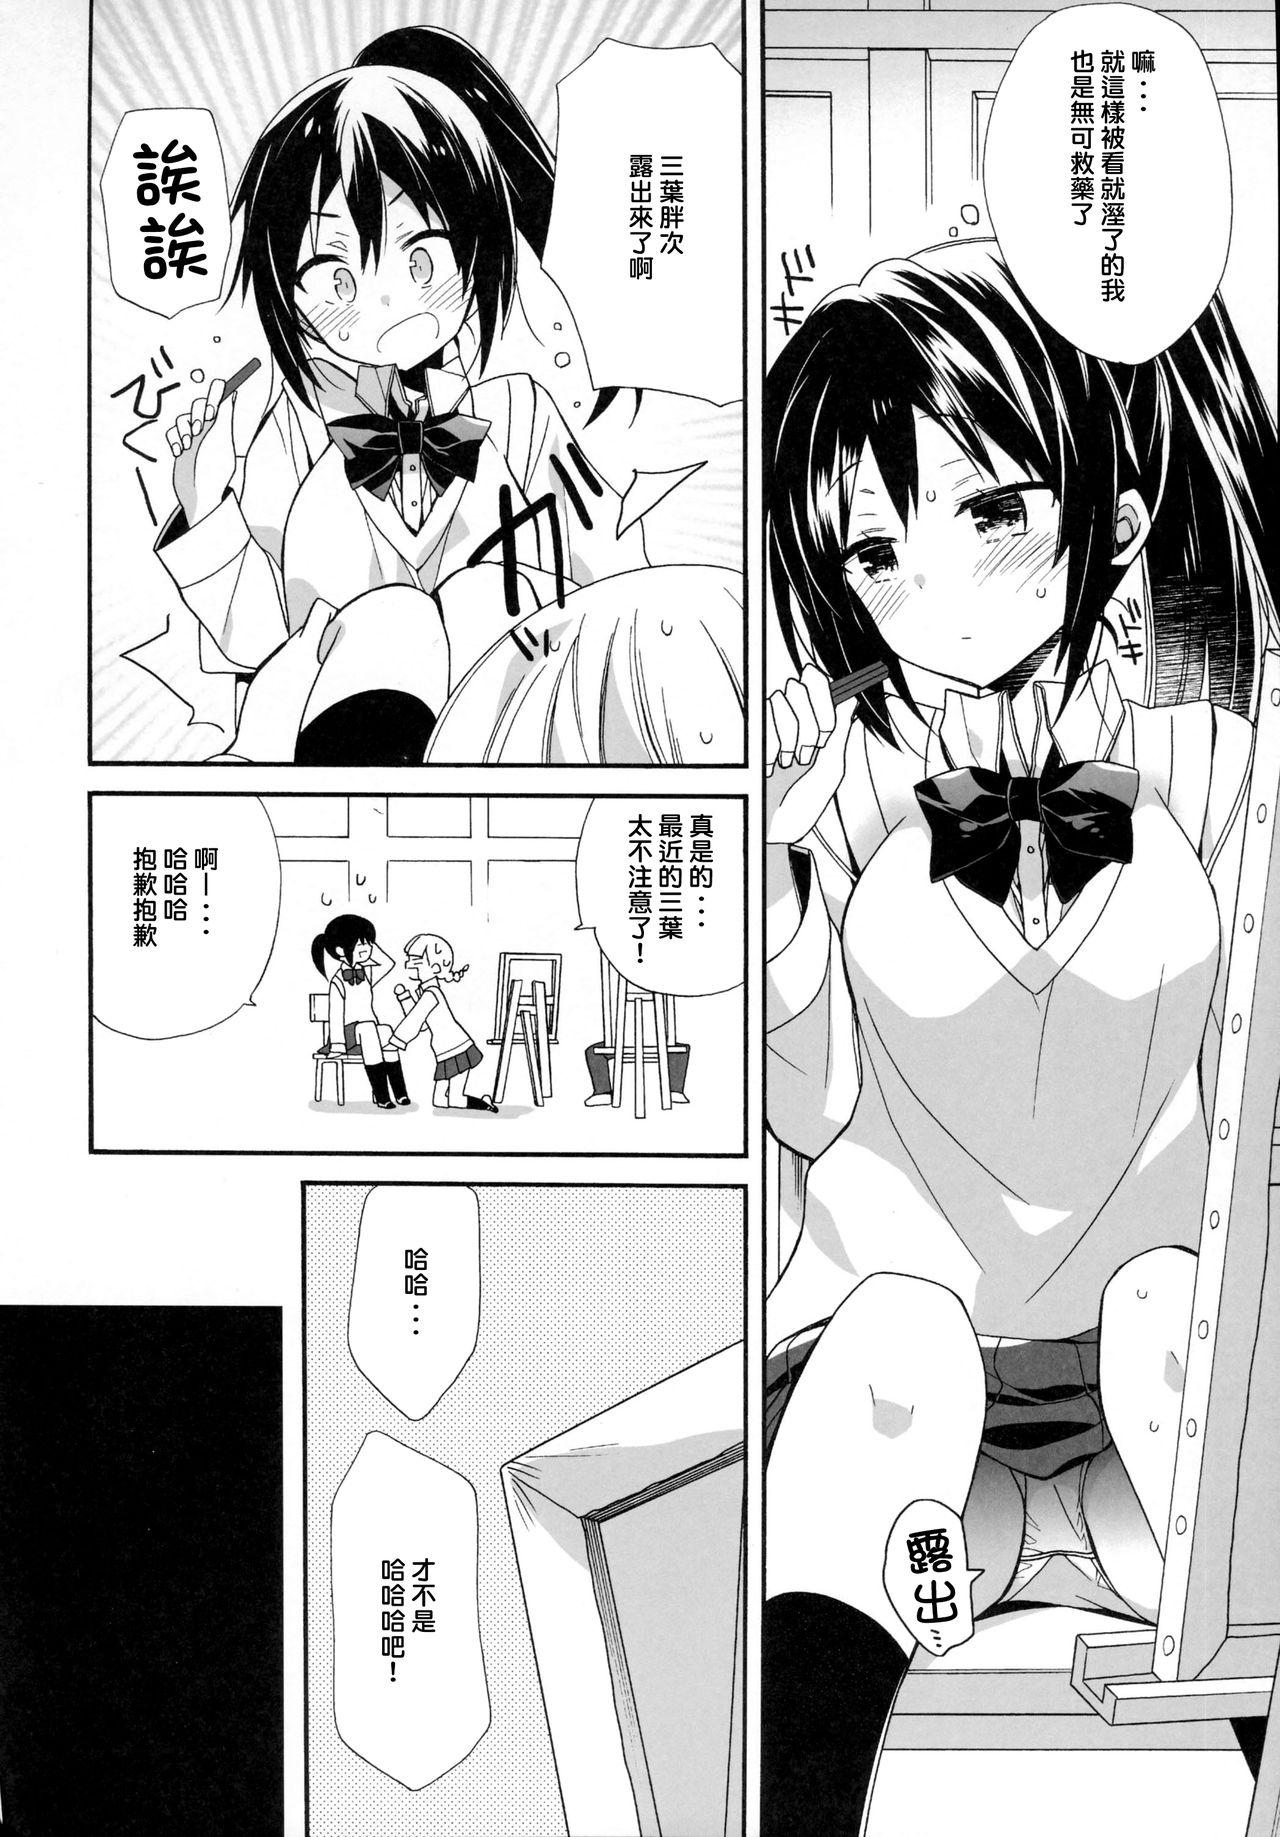 Anal Sex Yumeyume wasururu yume - Kimi no na wa. Real Couple - Page 6